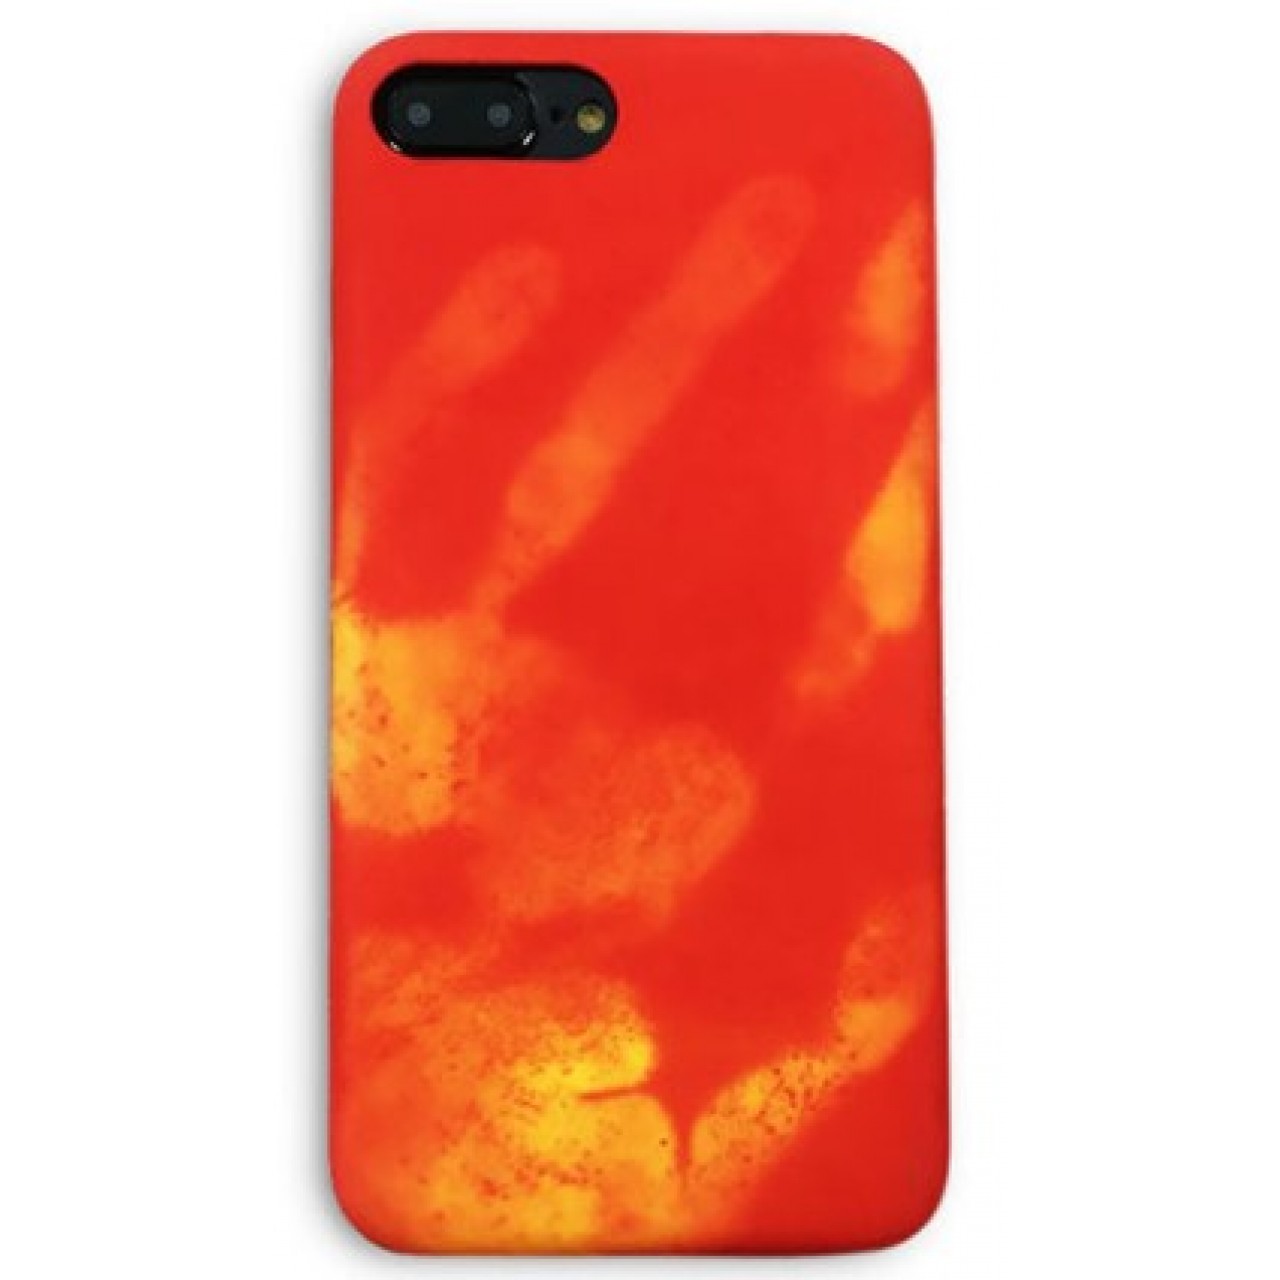 Θήκη iphone 7/8 Σκληρή που αλλάζει χρώμα με την θερμότητα - 3567 - Κόκκινο - OEM